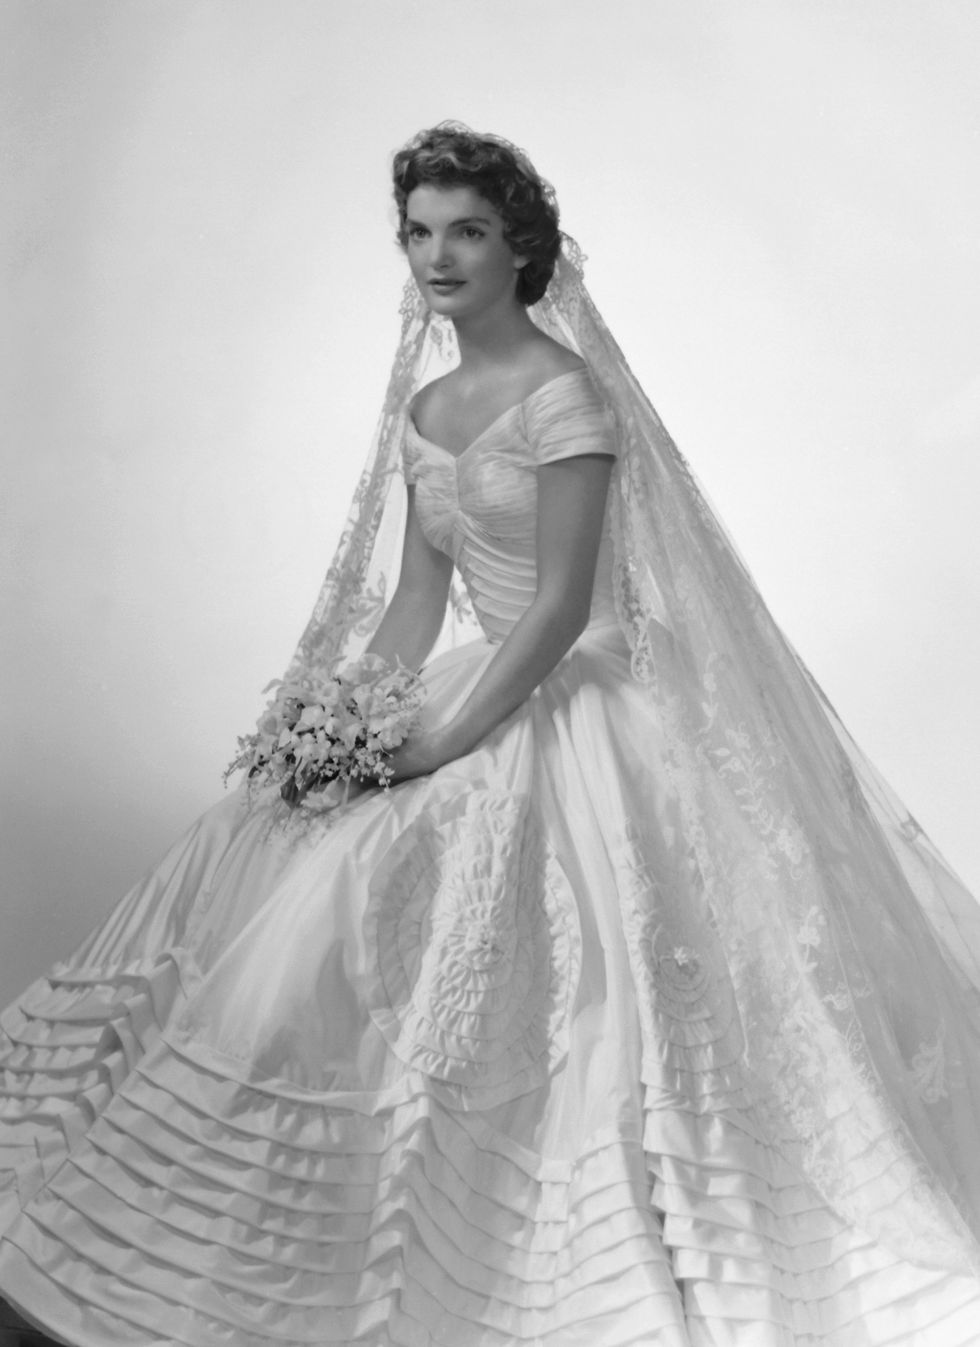 jacqueline kennedy wedding dress designed by ann lowe